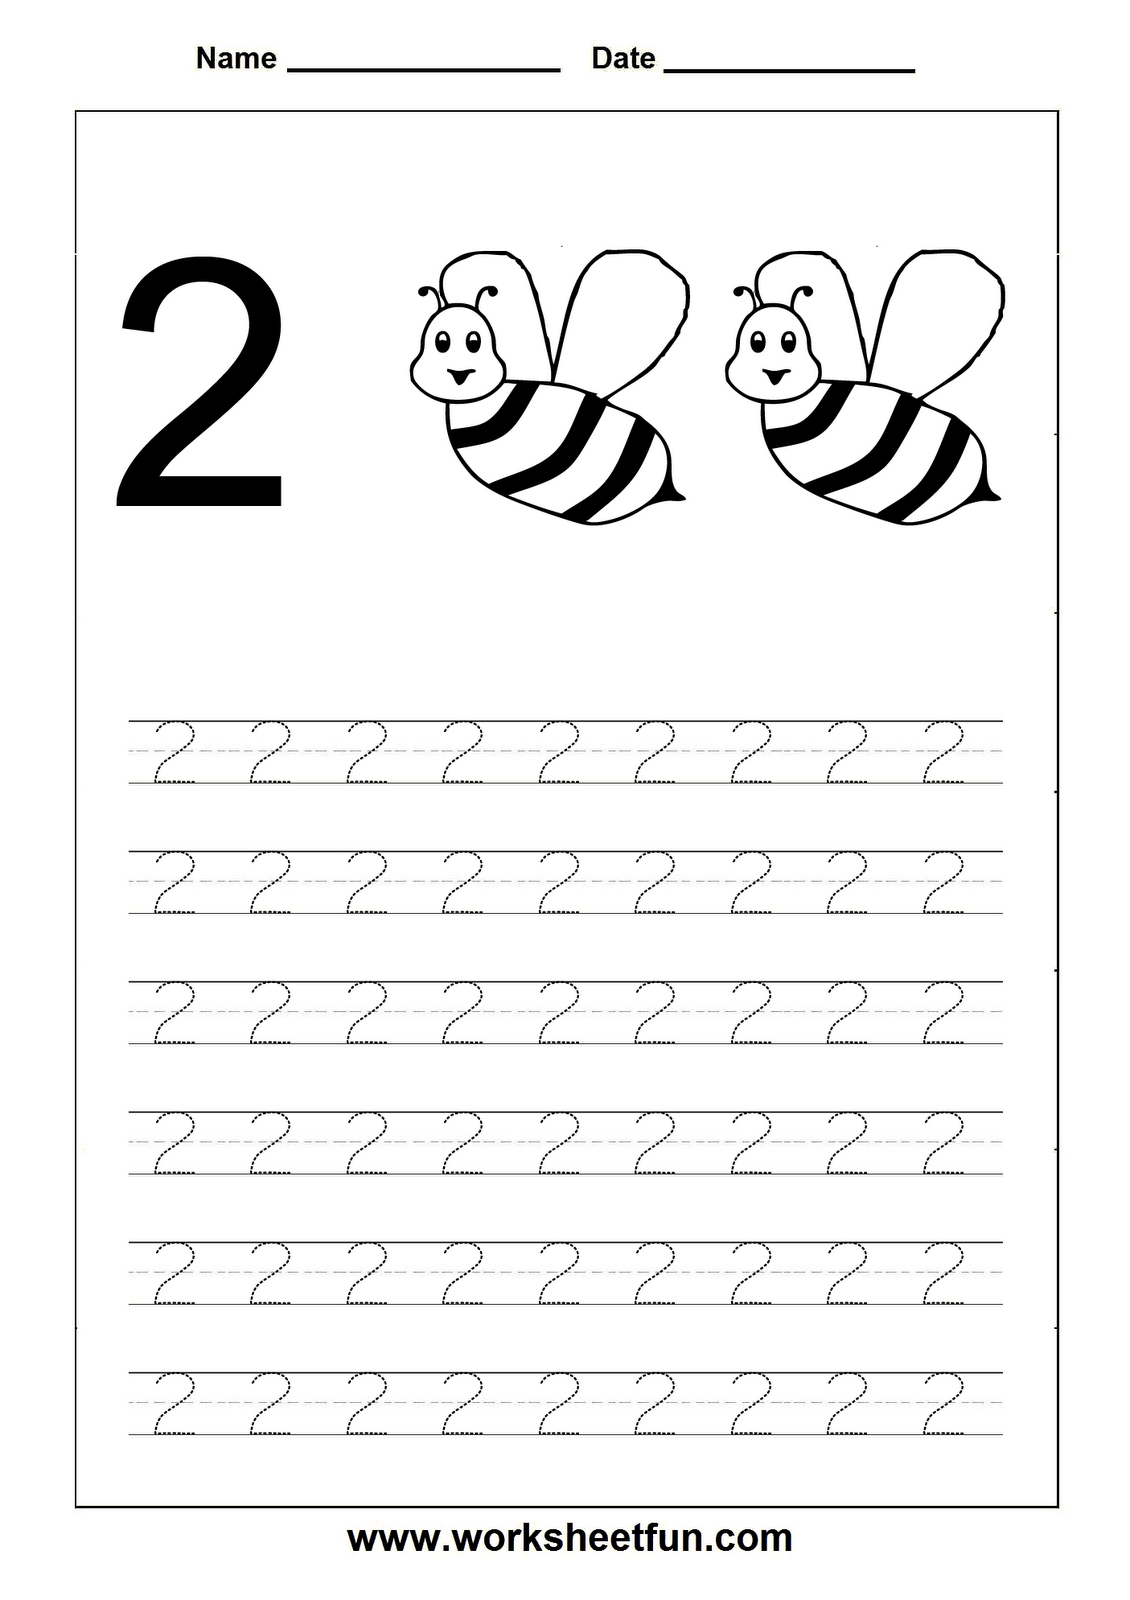 Worksheetfun - Free Printable Worksheets | Numbers Preschool pertaining to Letter 2 Tracing